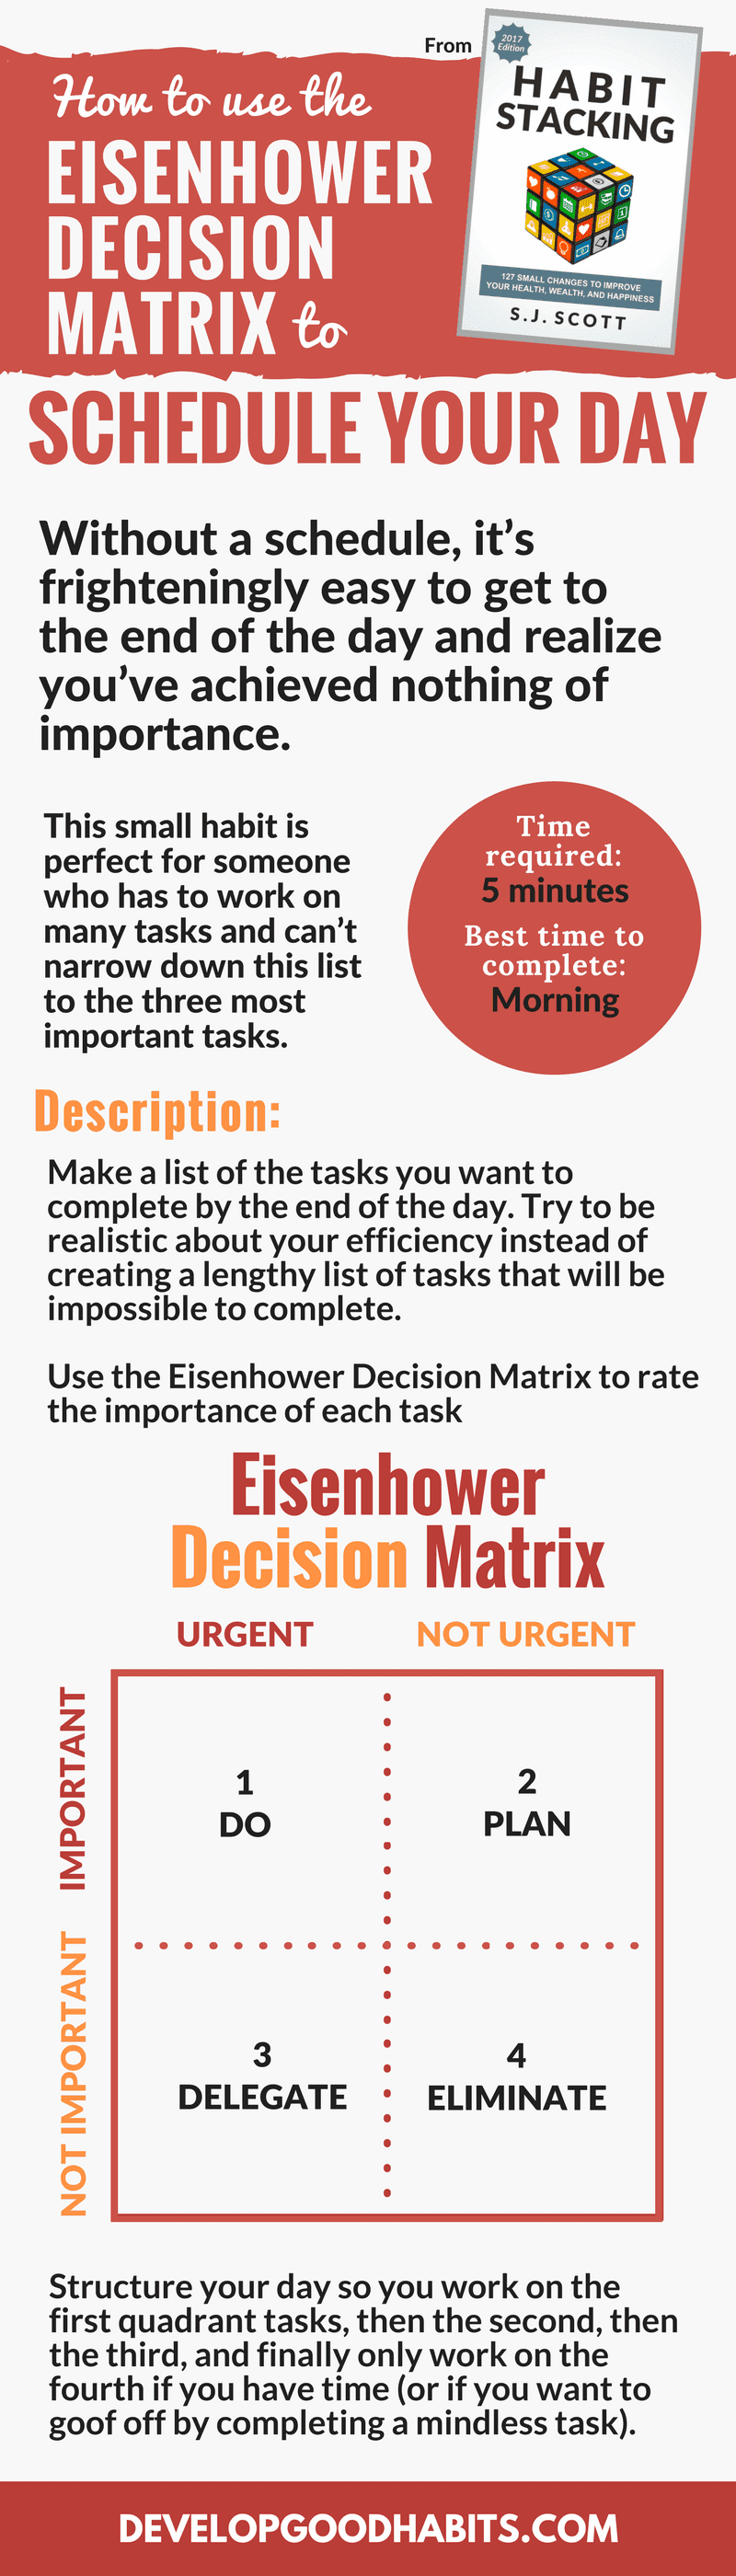 Eisenhower matrix | how to use the Eisenhower matrix